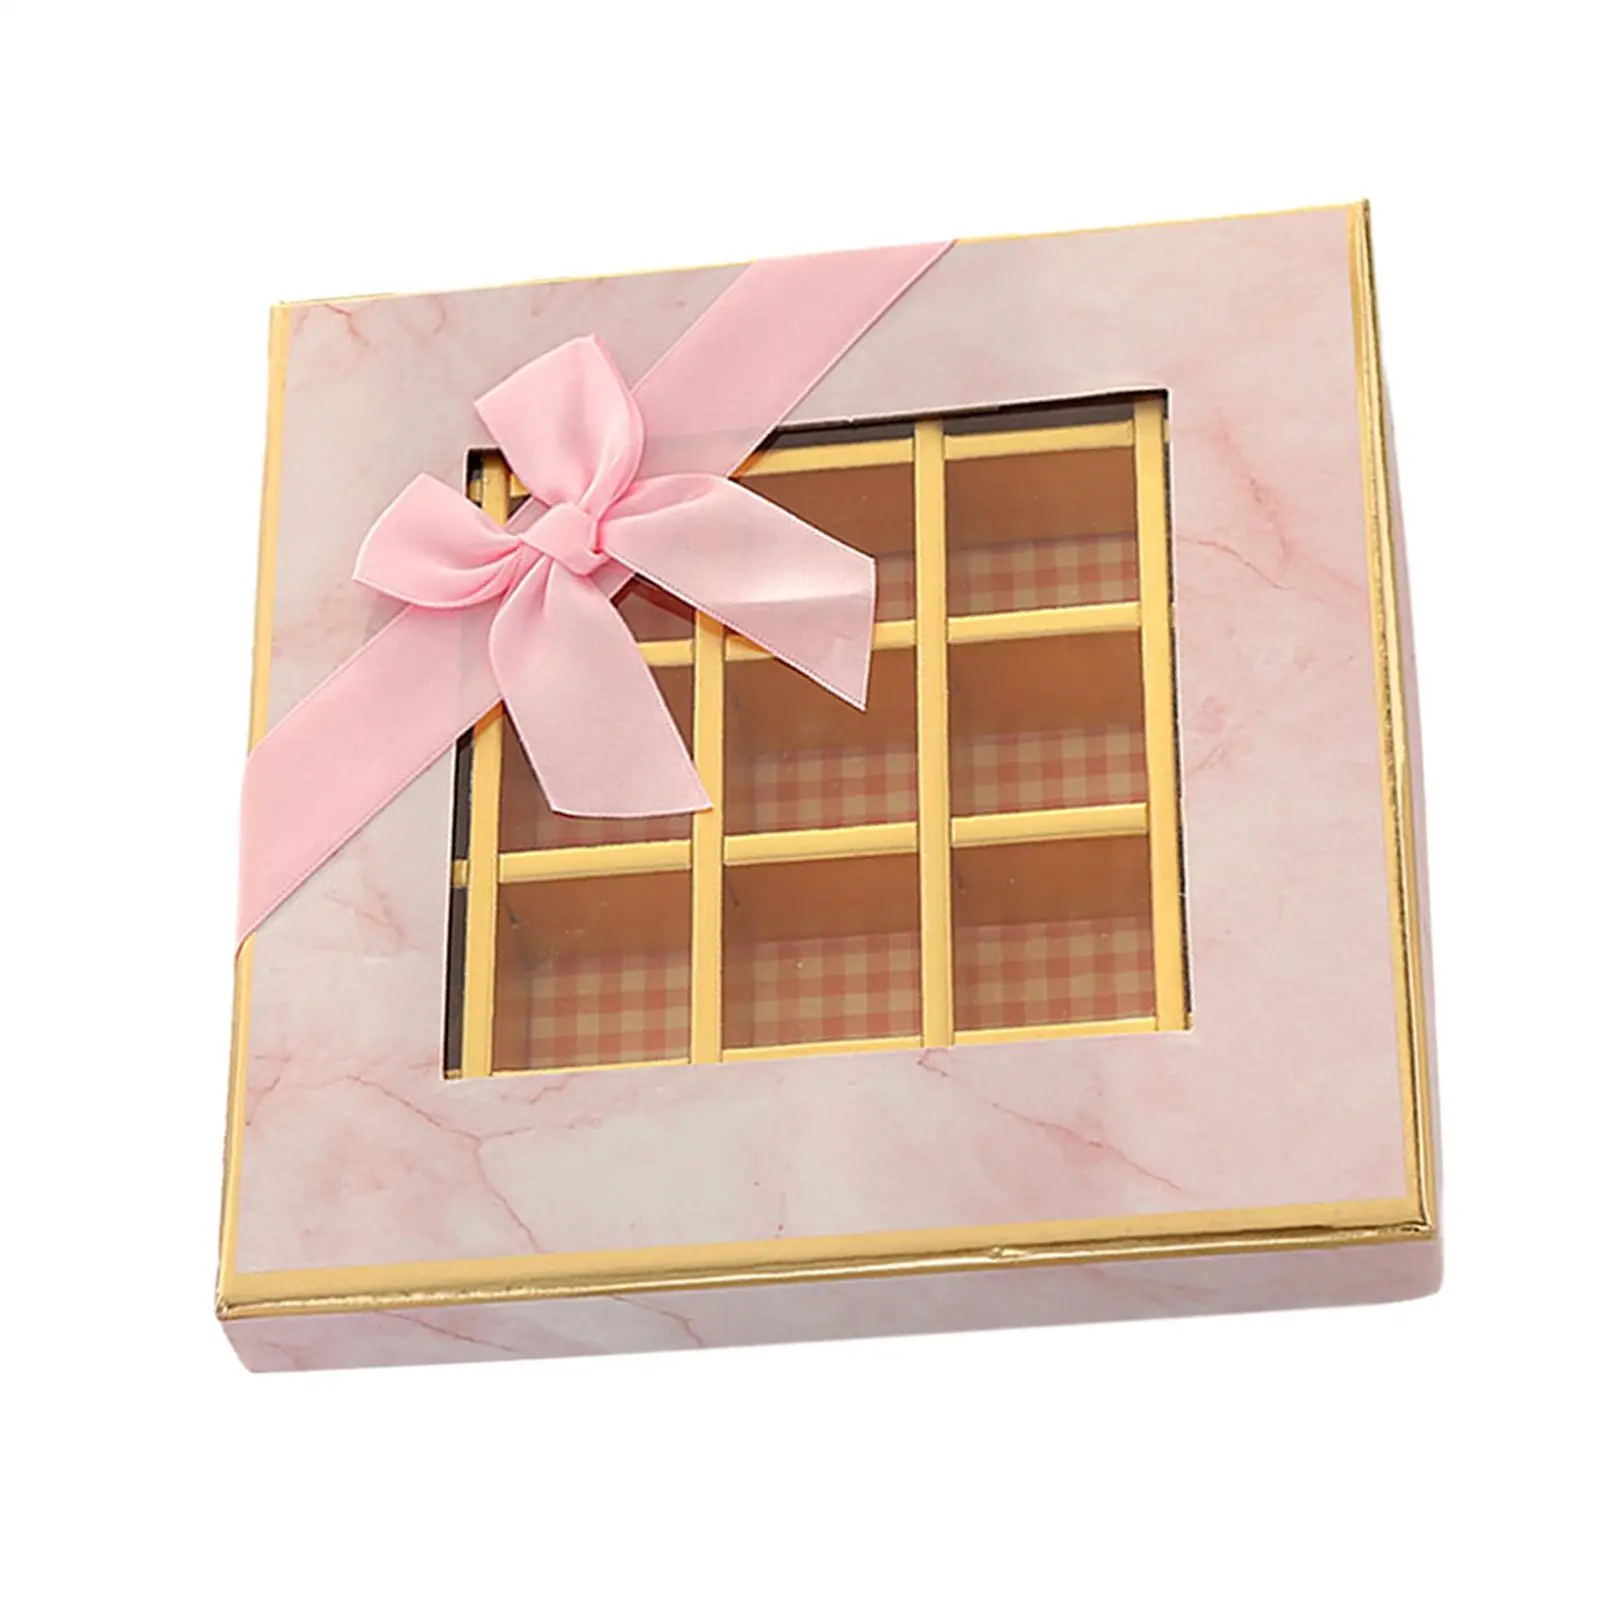 Csokoládé kijelző doboz 9 rácsos doboz ablakos doboz divatos könnyű ajándékcsomagoló doboz barátnőnek Barát karácsony - 3